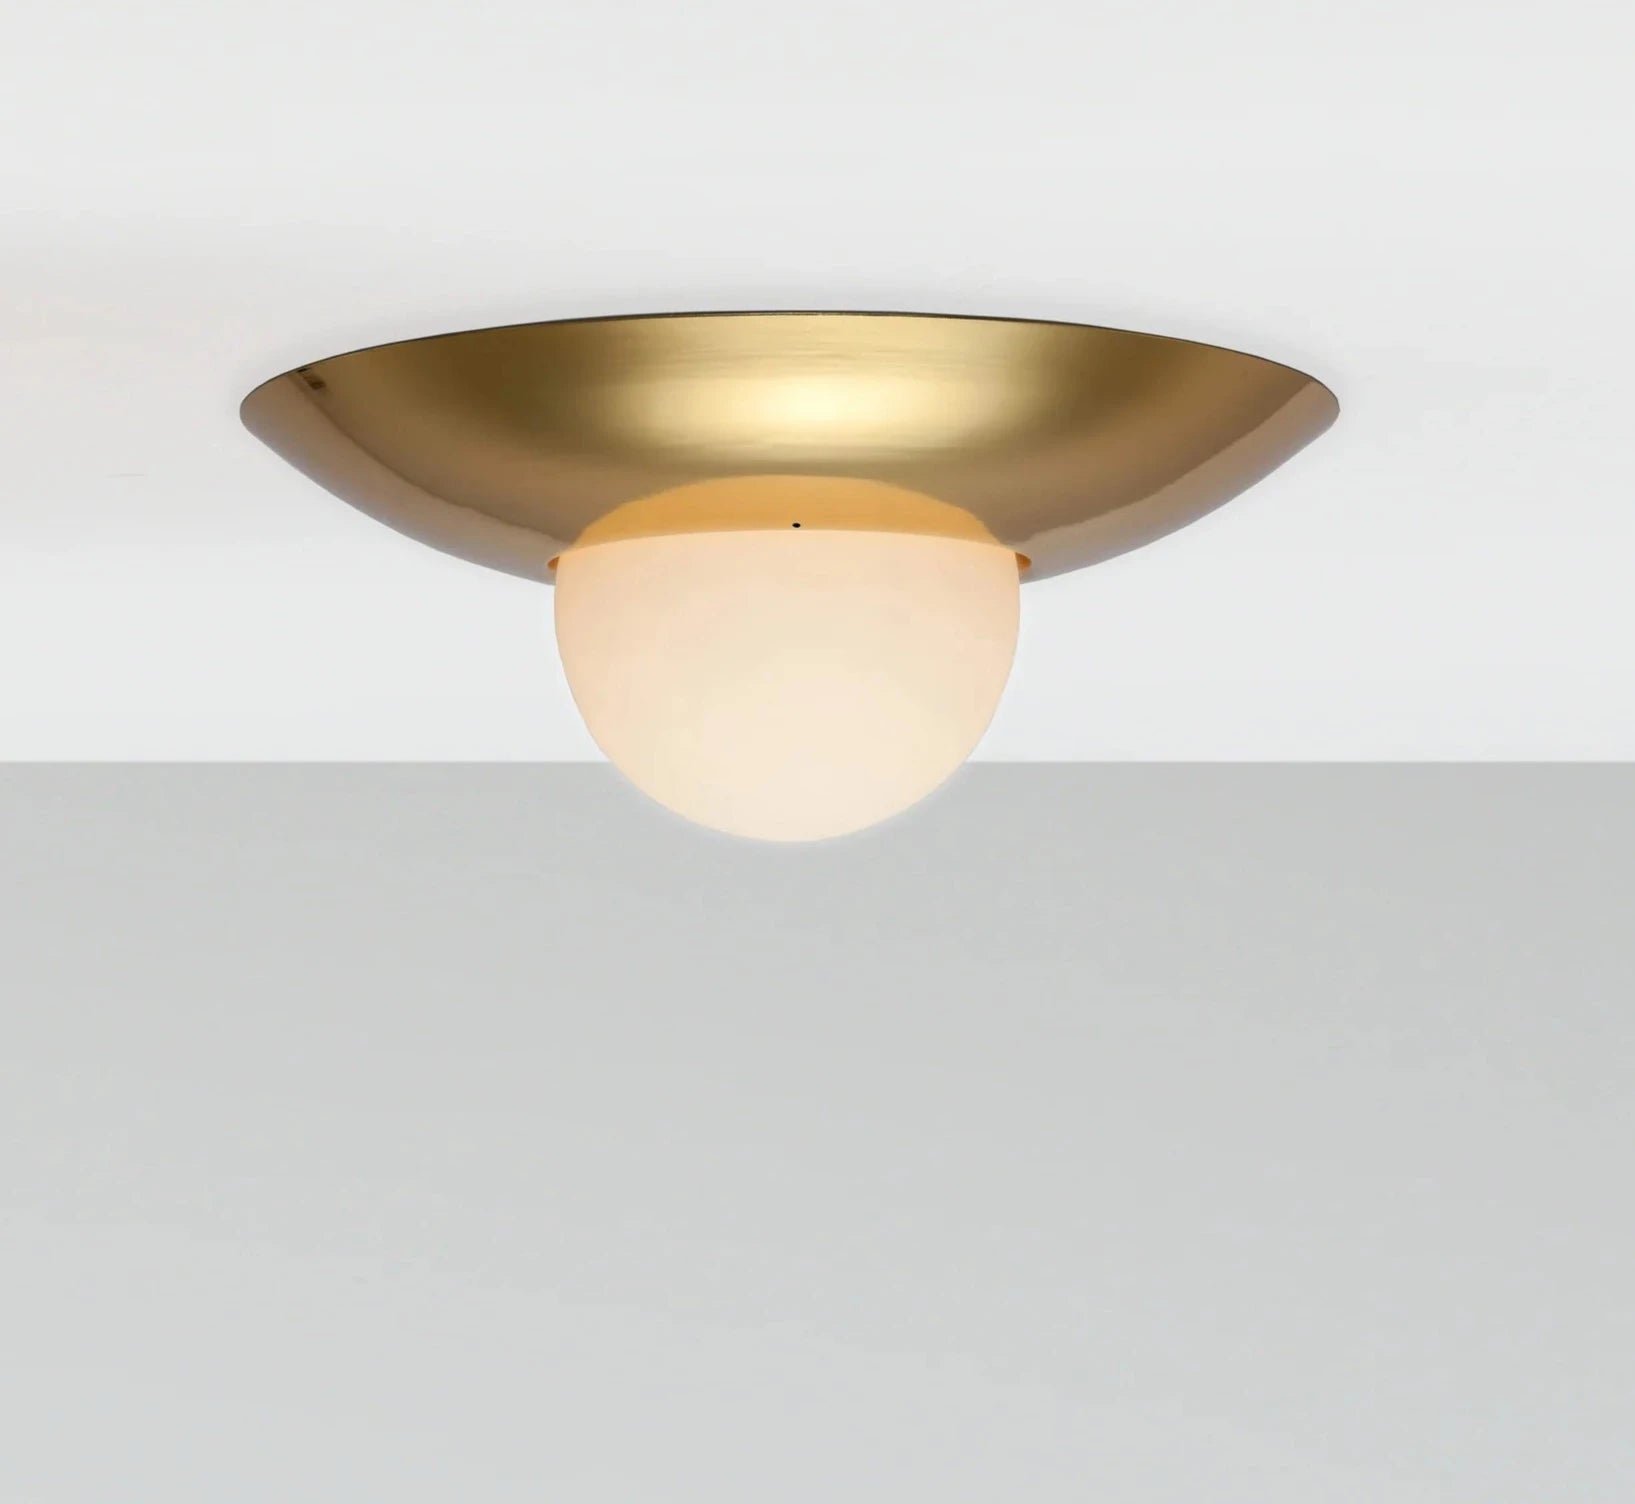 House of Brass Dome Flush Ceiling Light | House of Dekkor